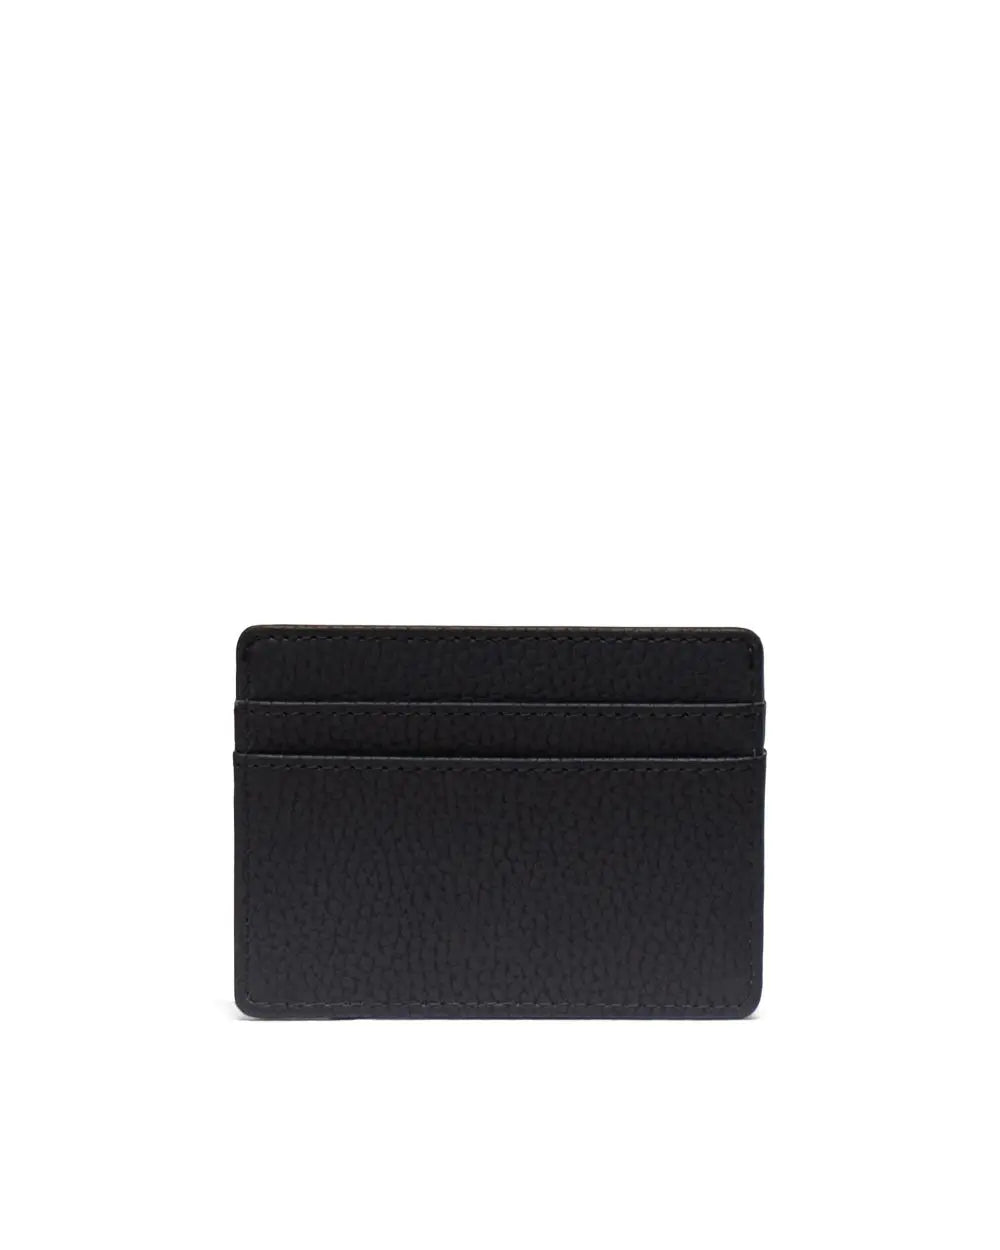 Herschel Supply Co. Charlie Leather Wallet - Black - Sun Diego Boardshop